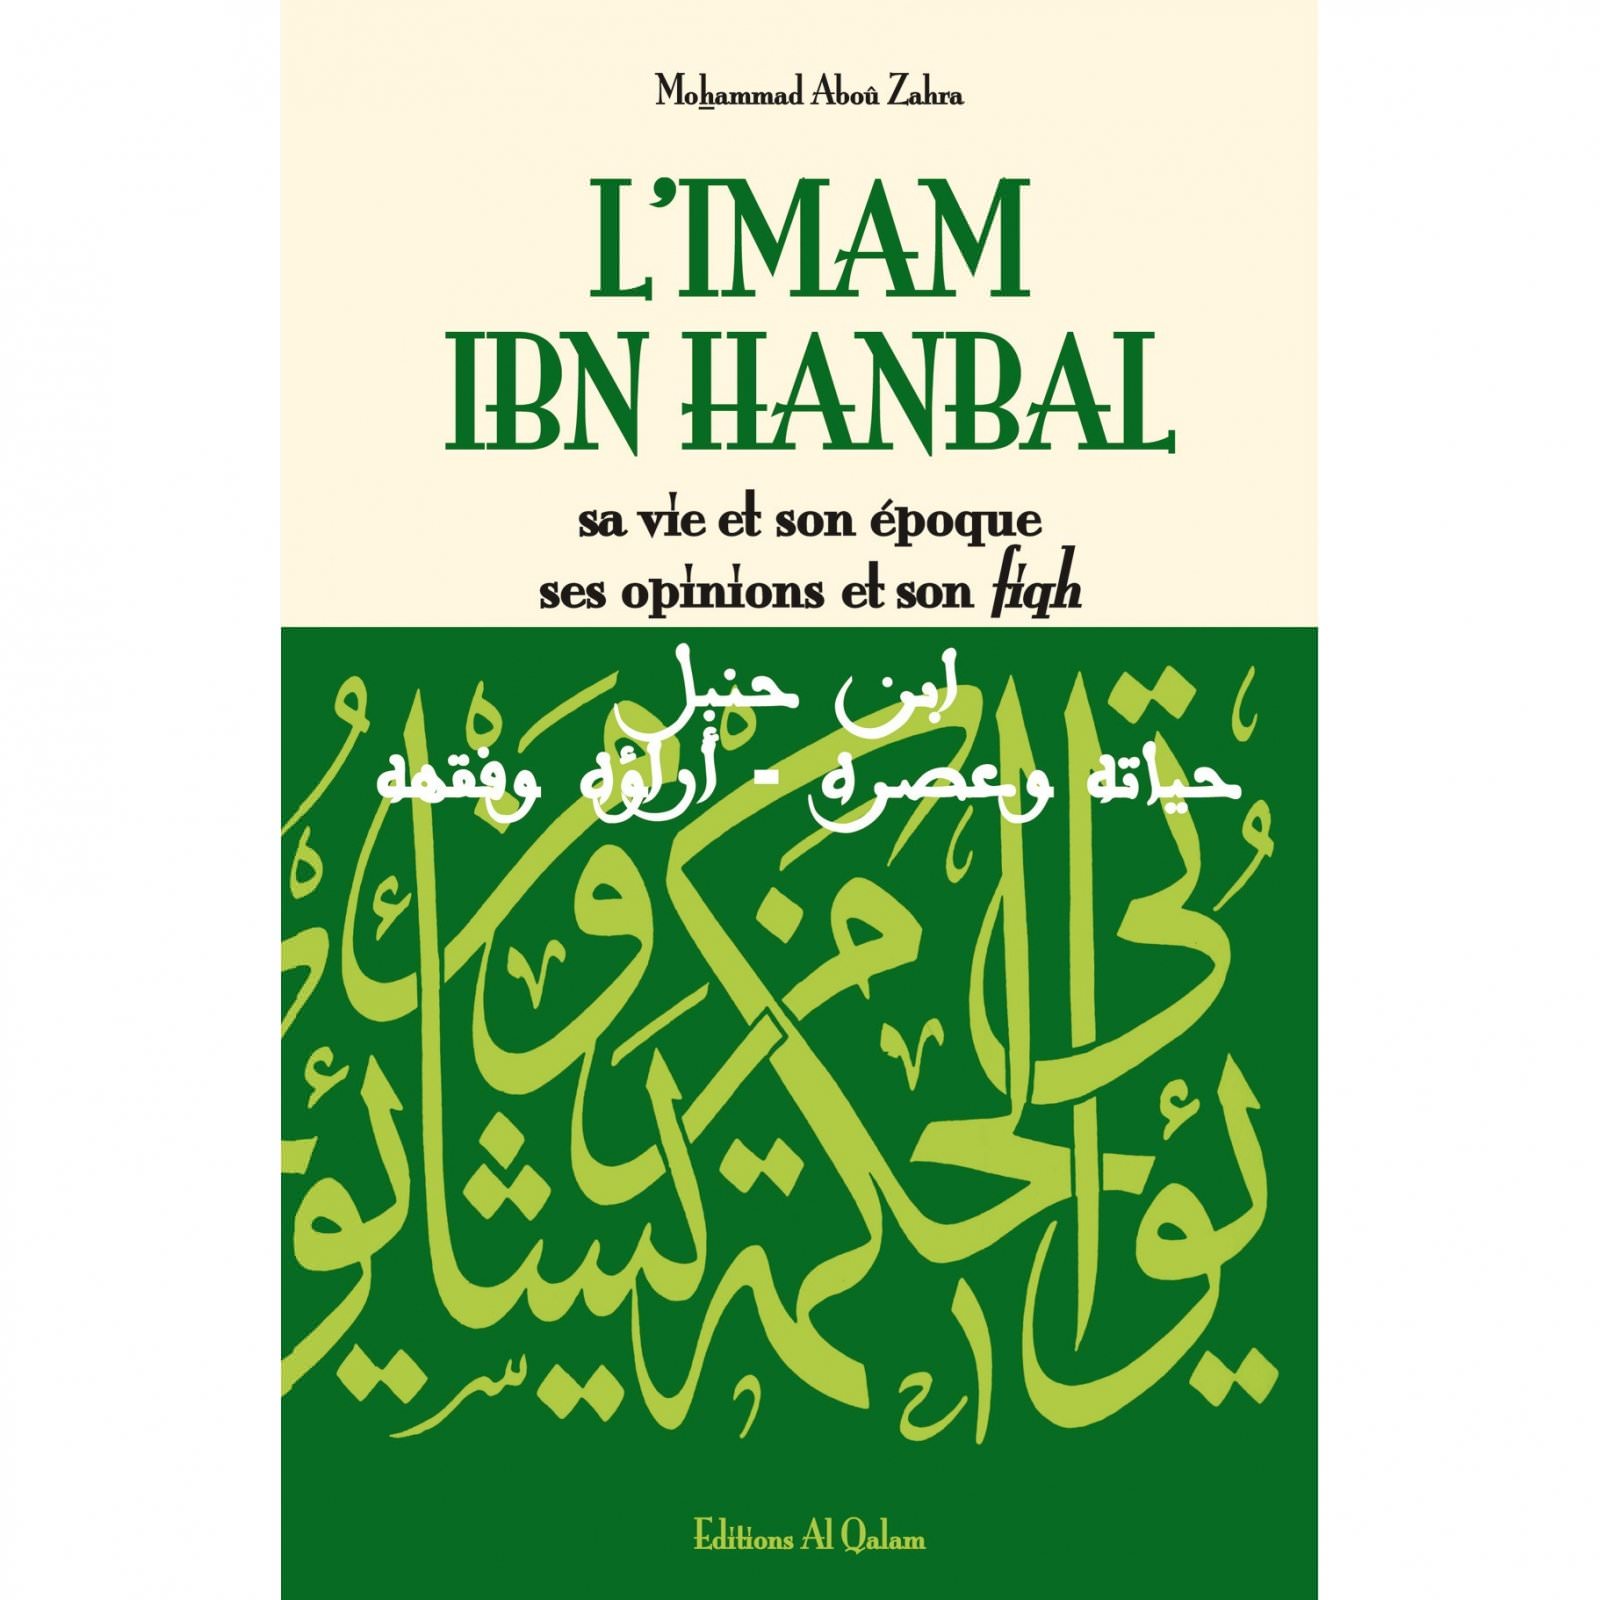 L'Imam Ibn hanbal sa vie et son époque ses opinios et son fiqh Mohammad Abou Zahra